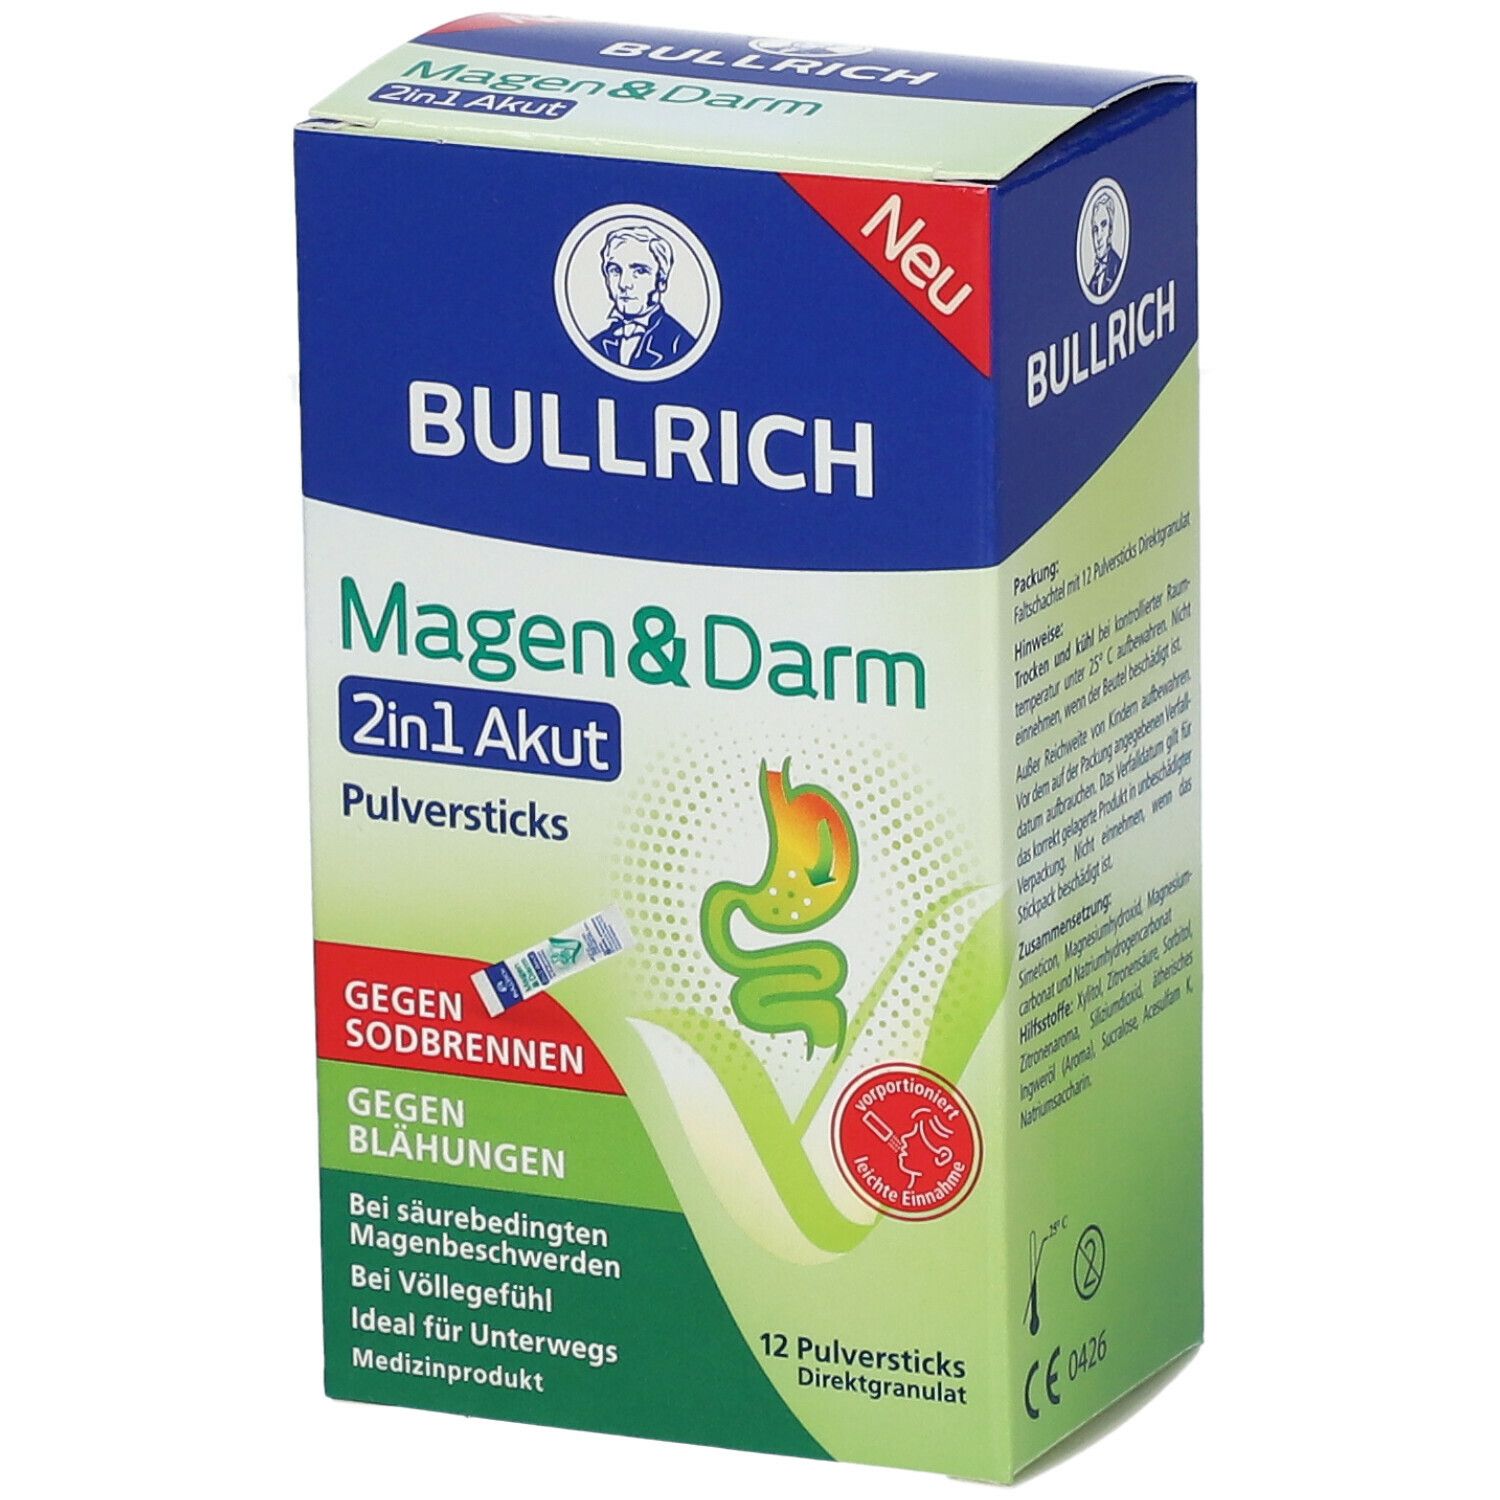 Bullrich Magen & Darm 2in1 Akut